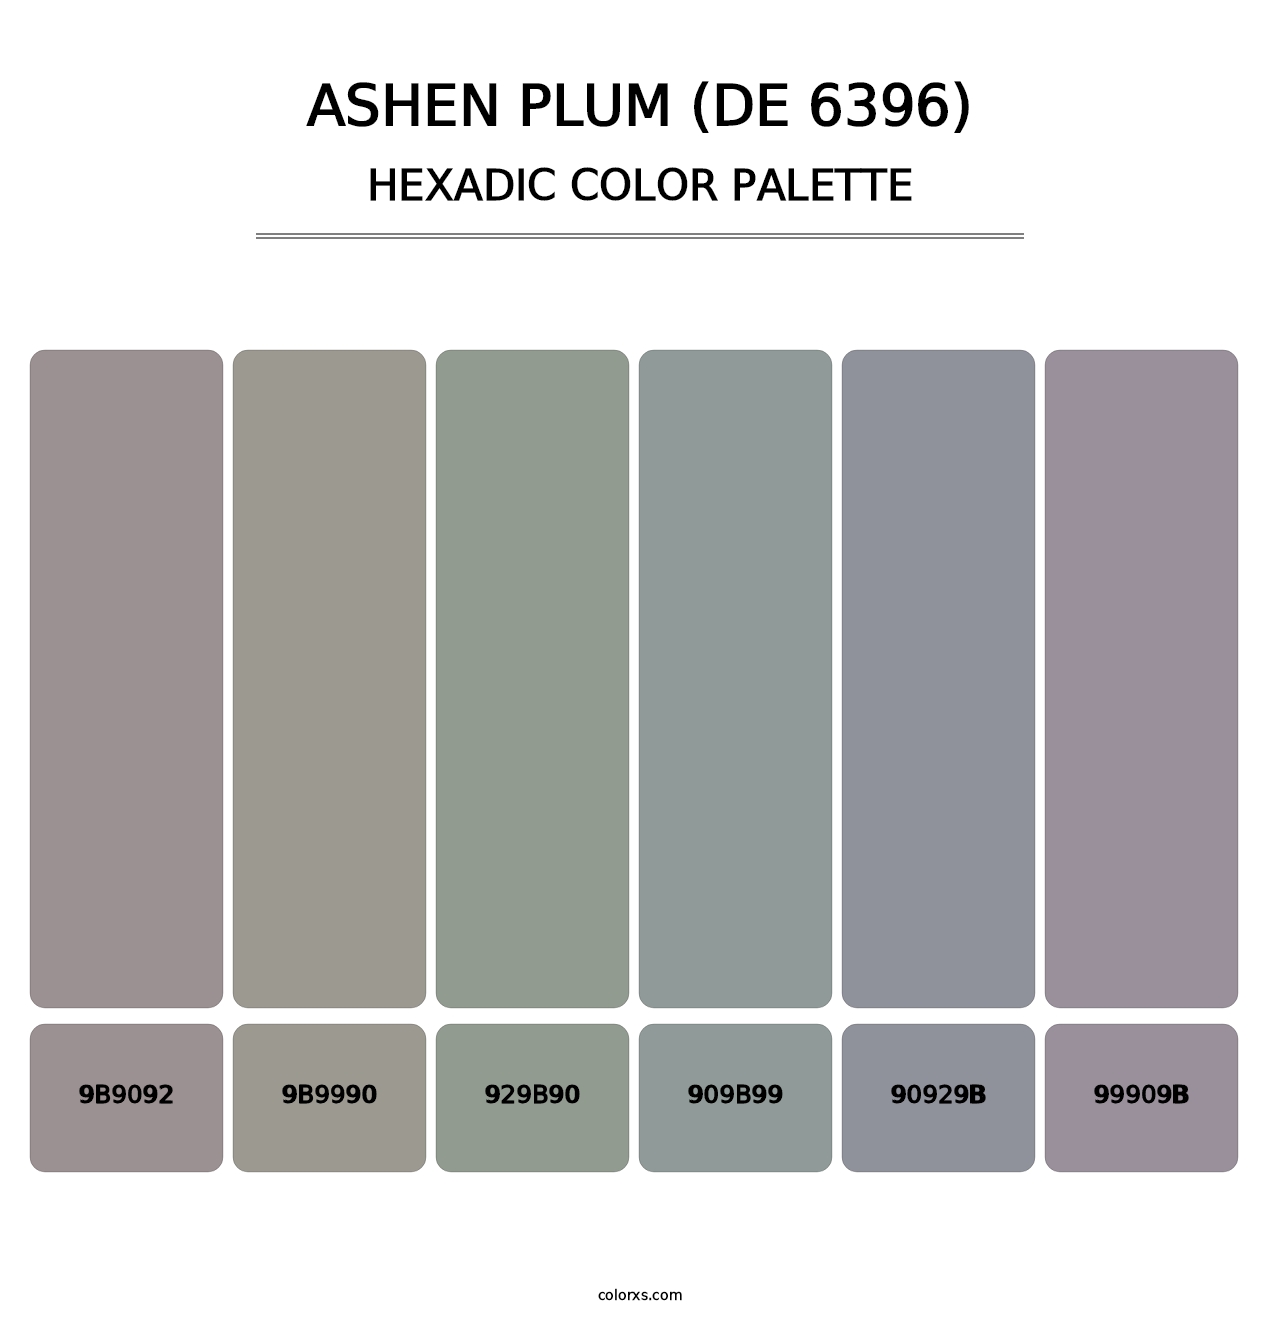 Ashen Plum (DE 6396) - Hexadic Color Palette